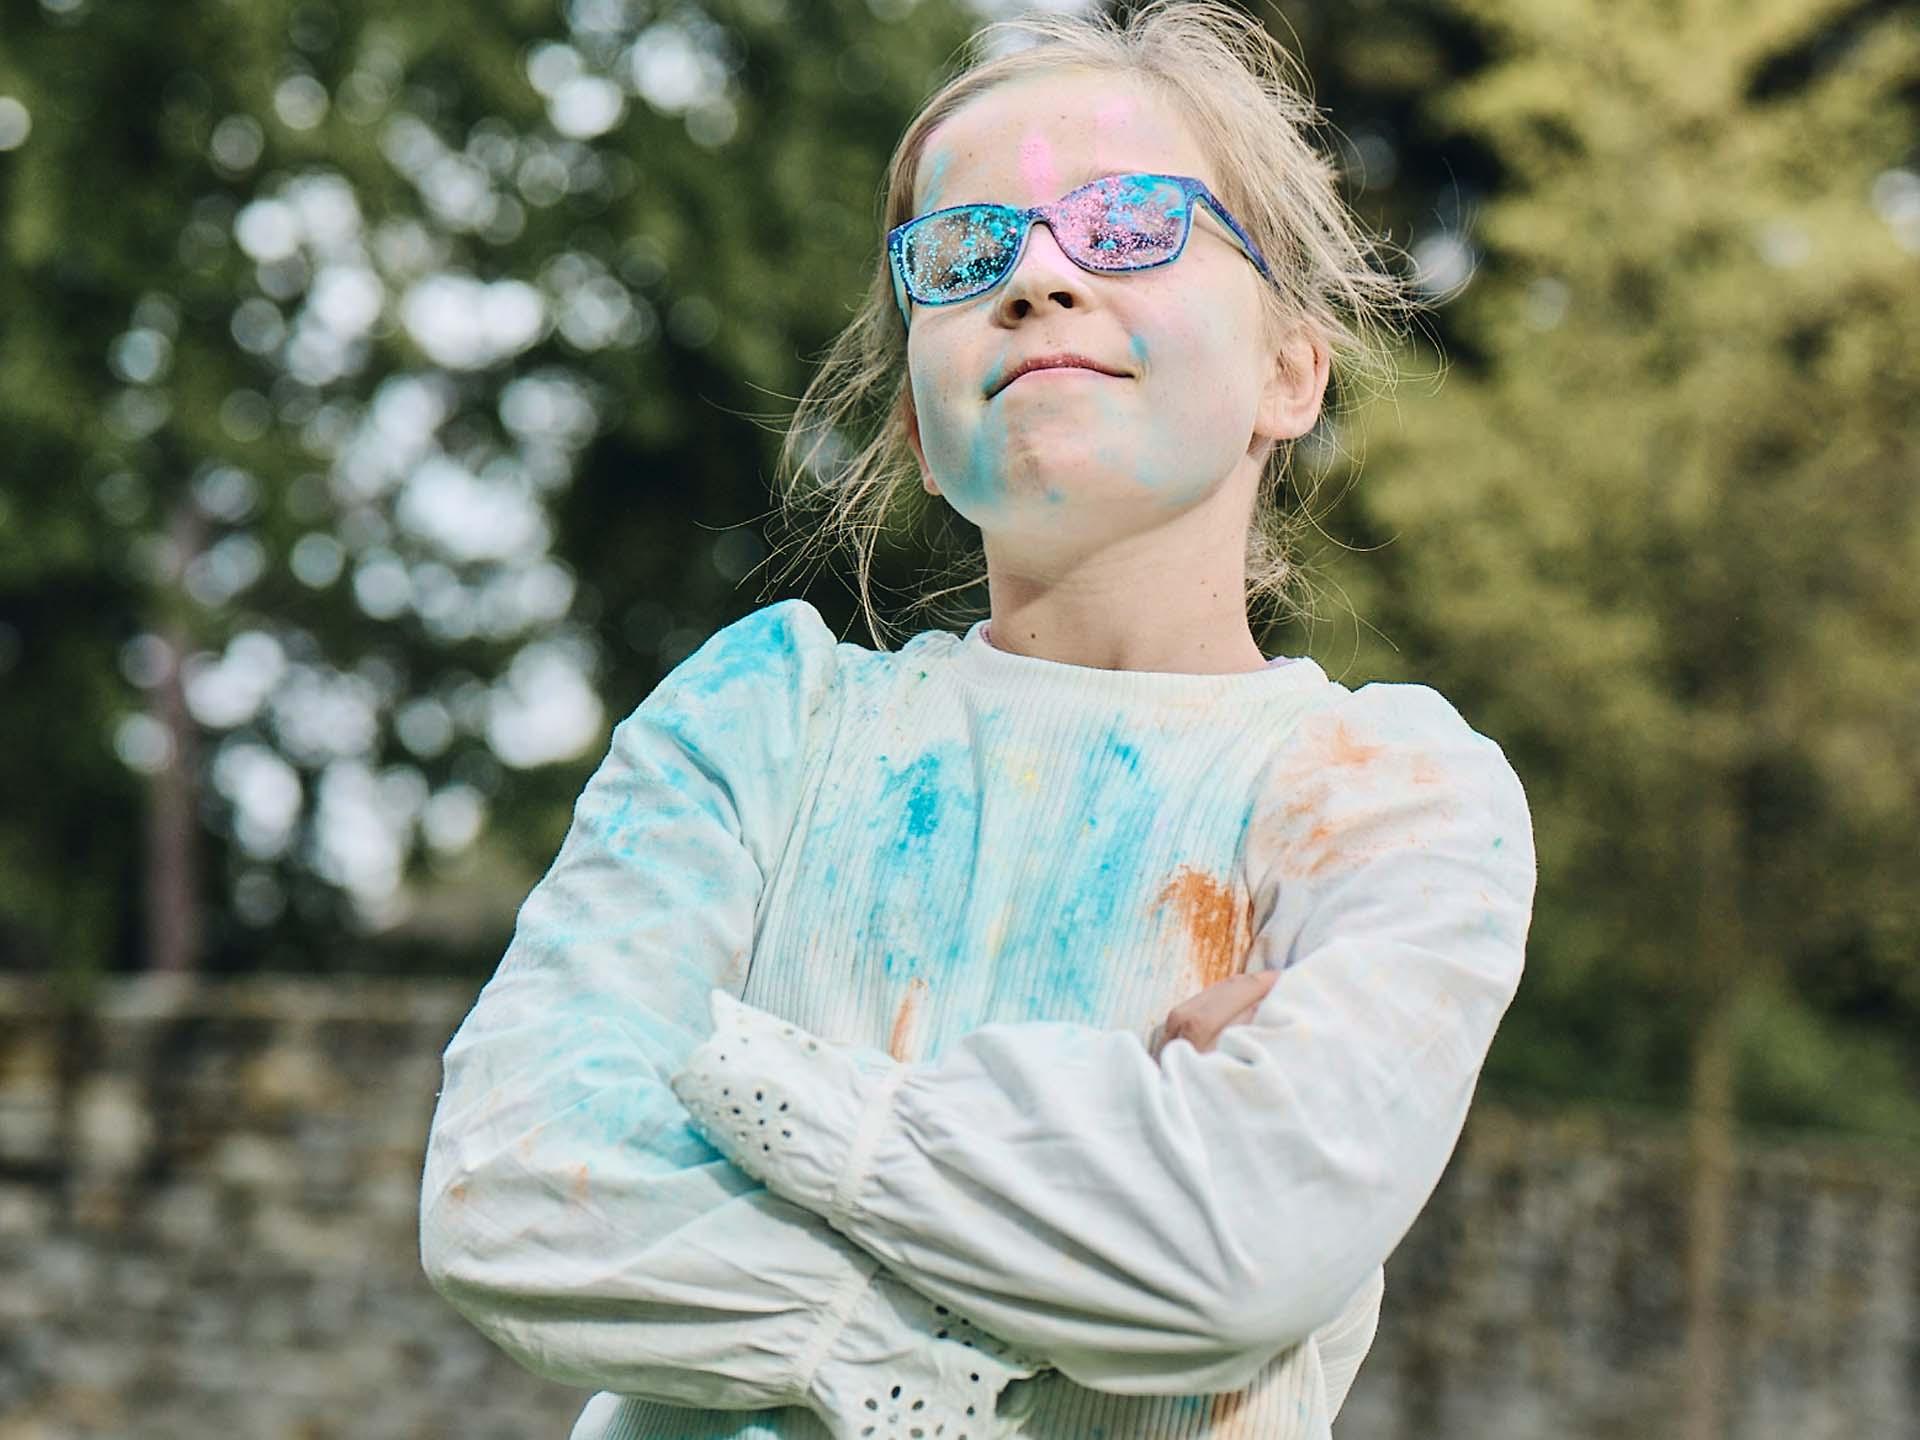 En pige med armene over kors og snavsede briller af at lege med farvet pulver ser kæk ud med et selv-tilfredst grin.